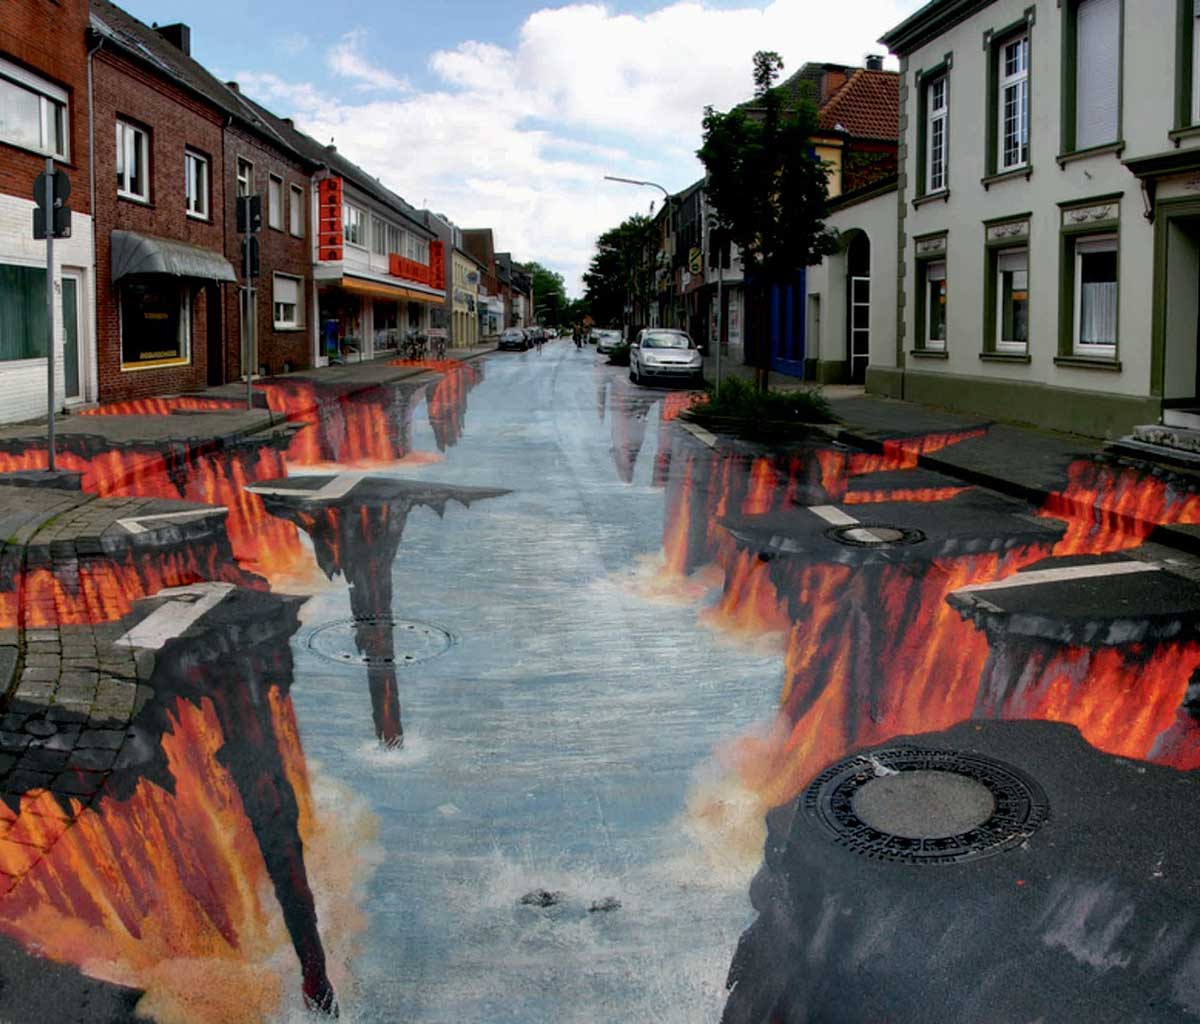 Blog Post: 3D Street Art